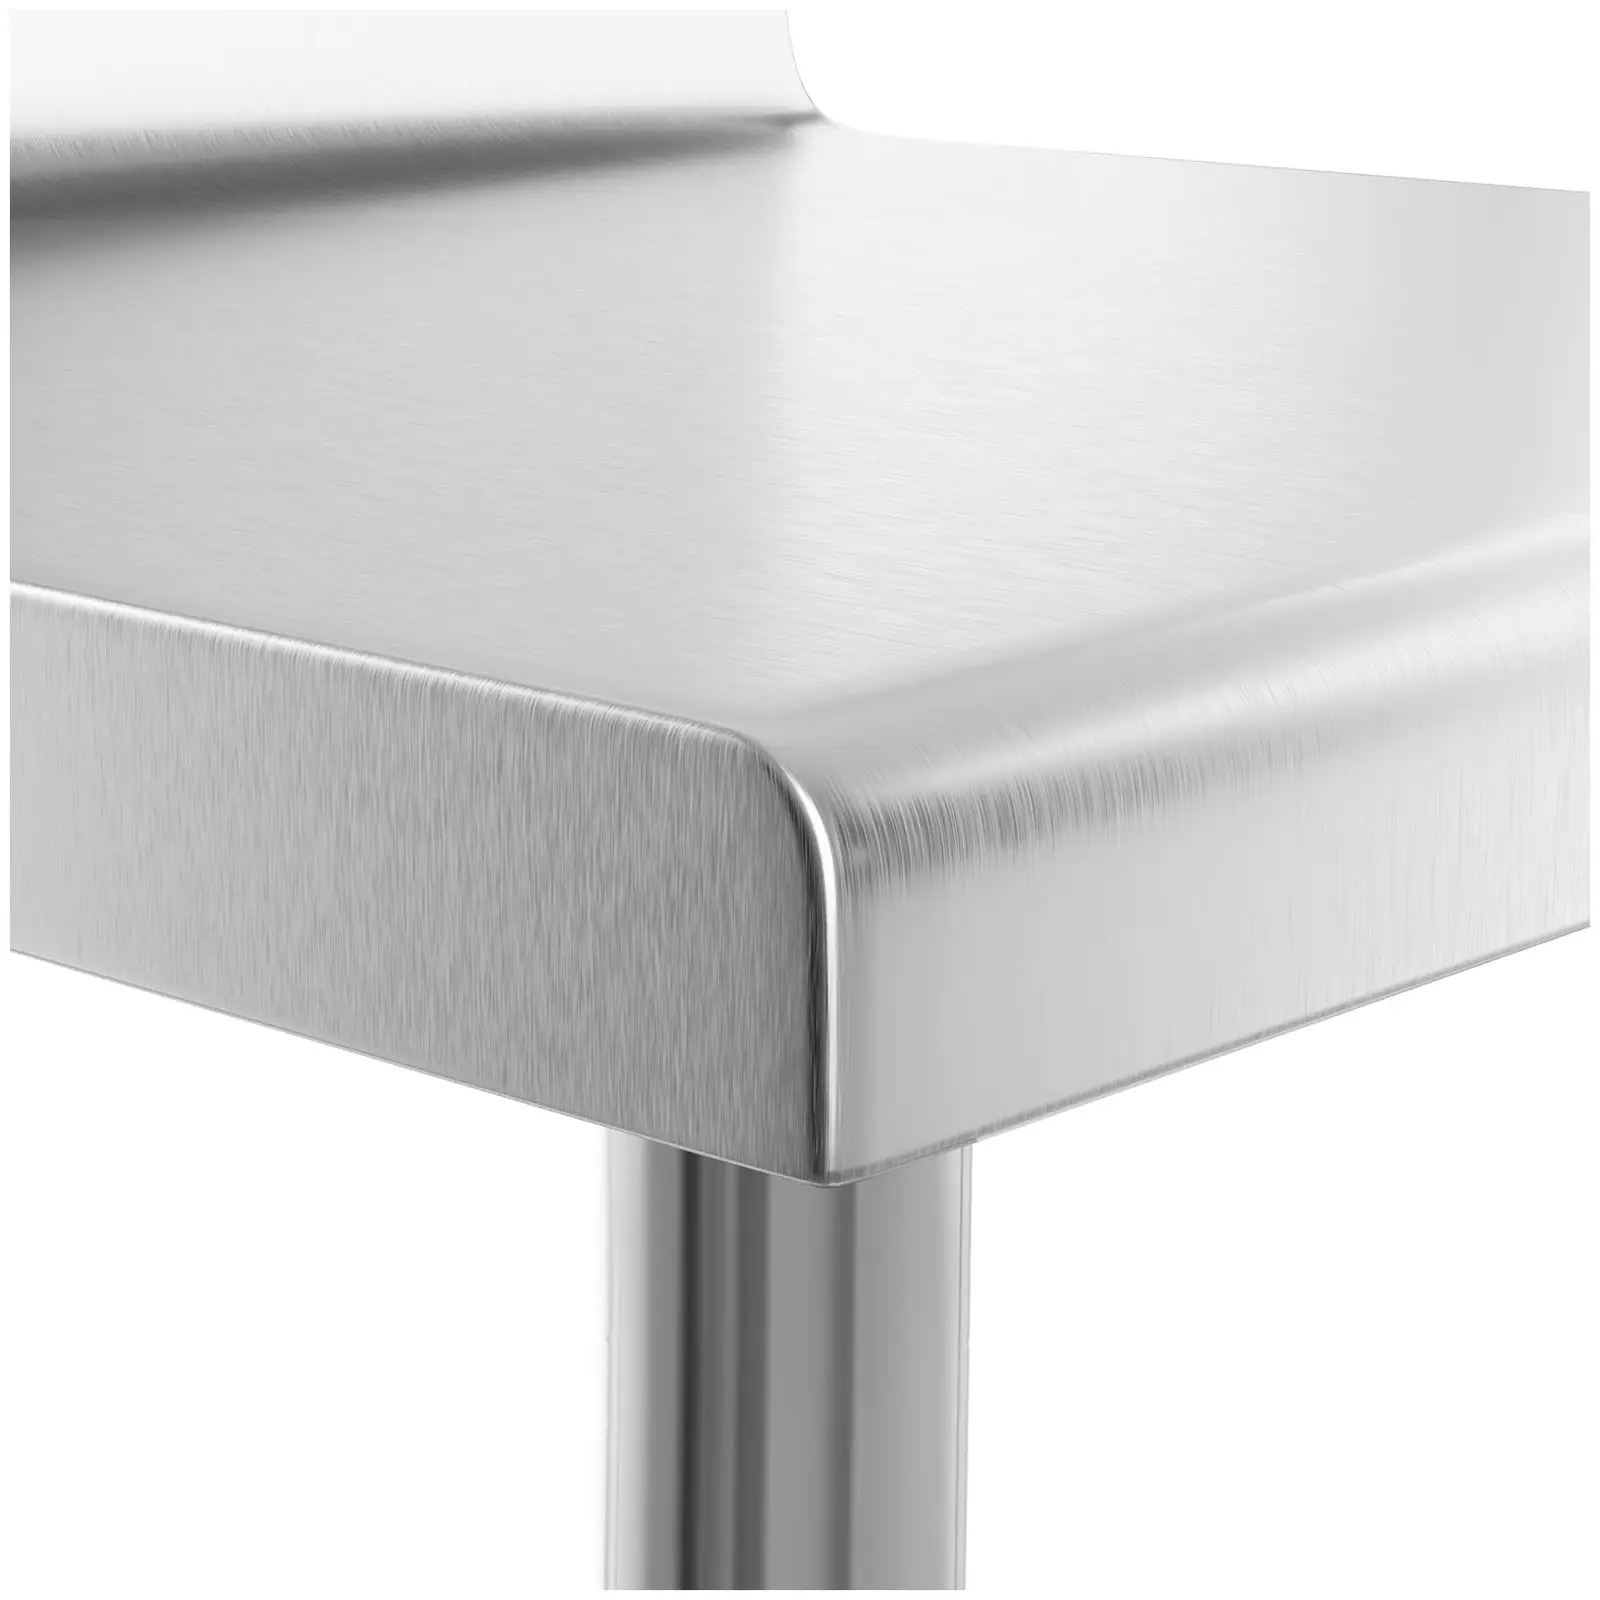 Rozsdamentes acél asztal - 60 x 60 cm - karimával- 150 kg terhelhetőség